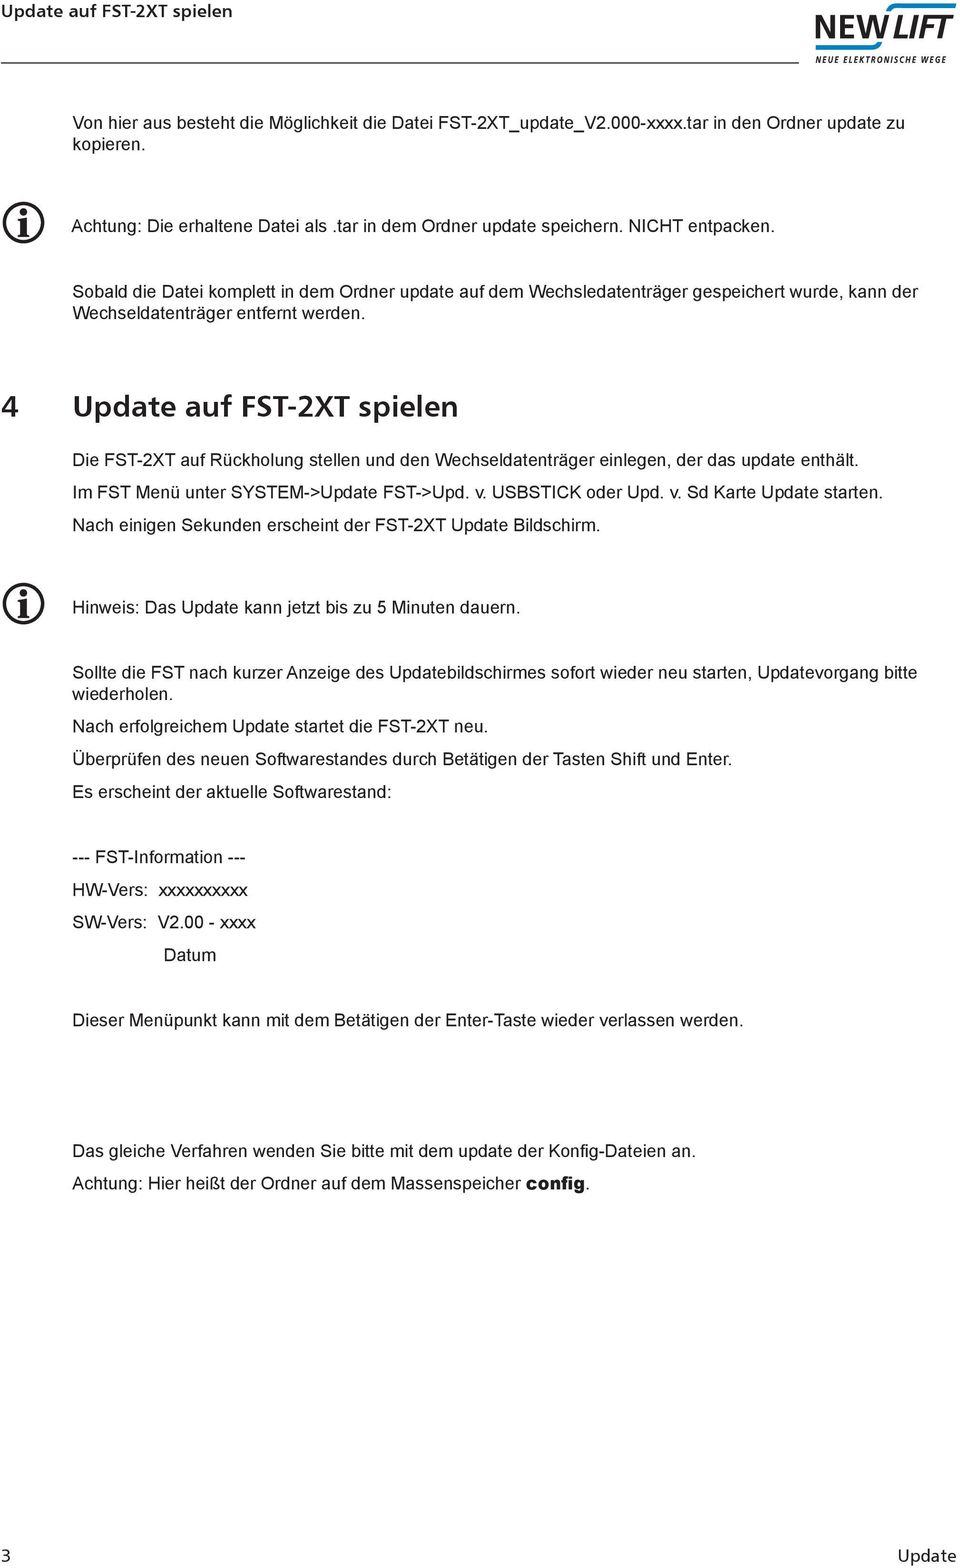 4 Update auf FST-2XT spielen Die FST-2XT auf Rückholung stellen und den Wechseldatenträger einlegen, der das update enthält. Im FST Menü unter SYSTEM->Update FST->Upd. v. USBSTICK oder Upd. v. Sd Karte Update starten.